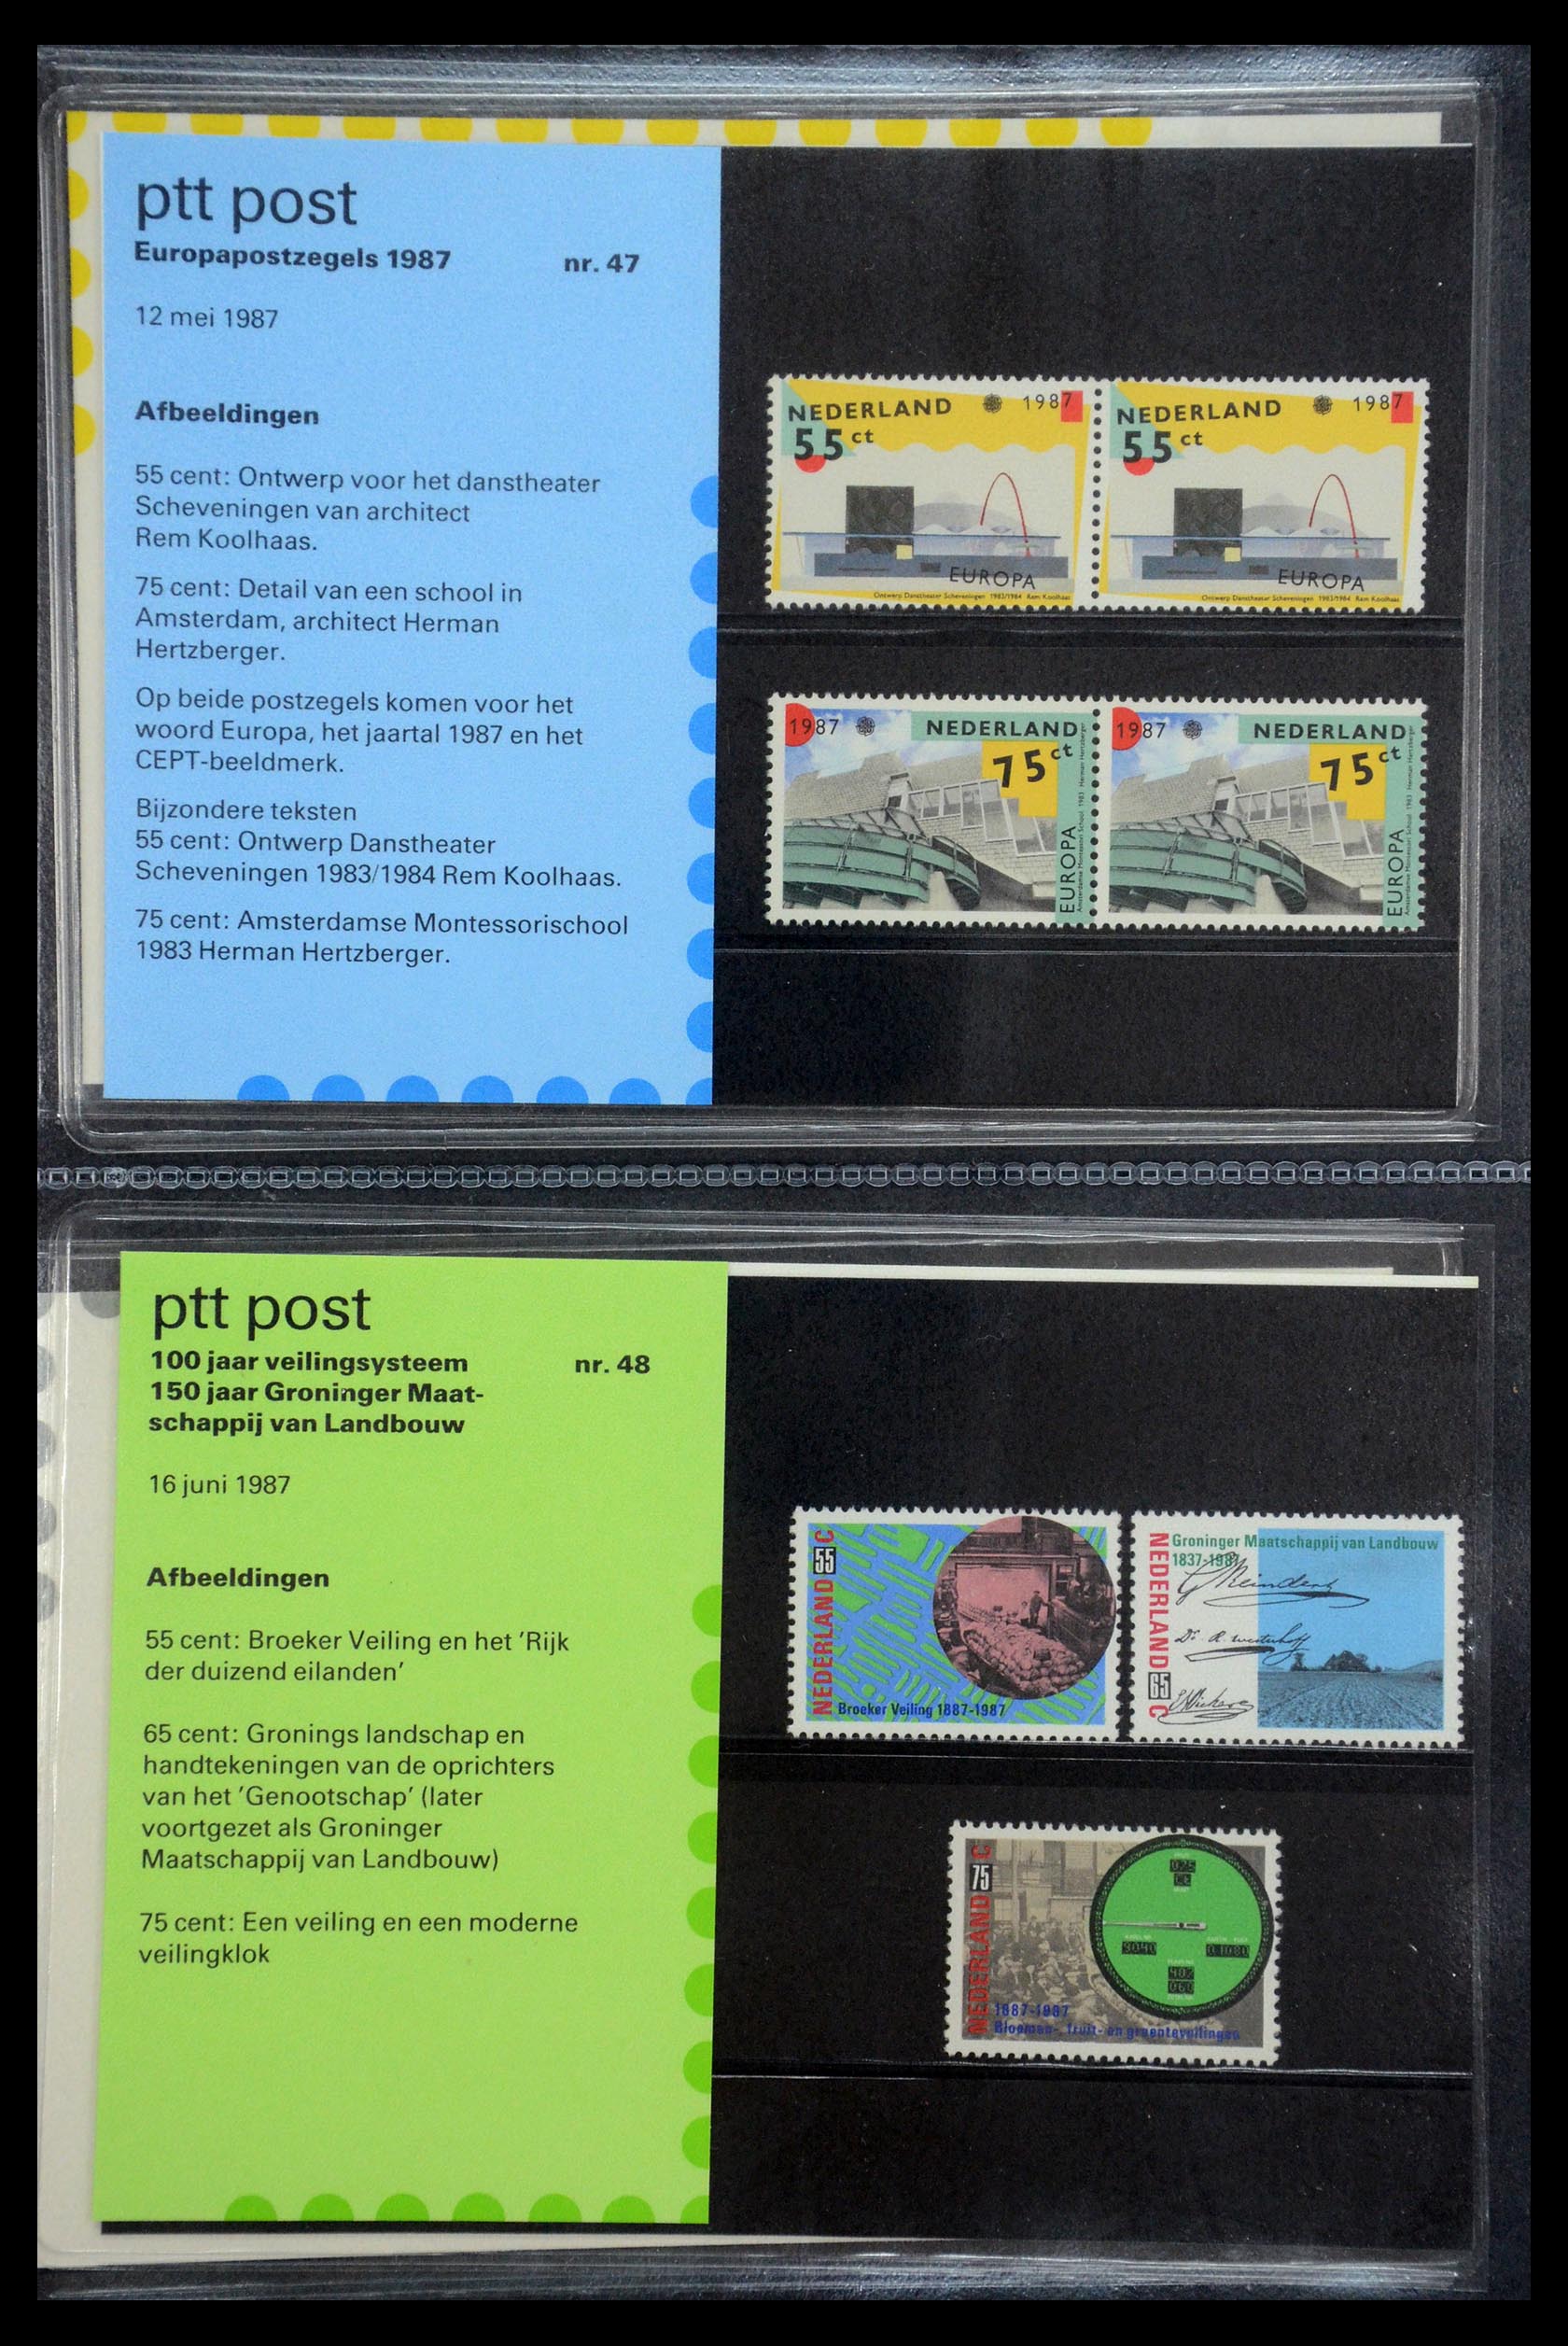 35187 024 - Stamp Collection 35187 Netherlands PTT presentation packs 1982-2019!